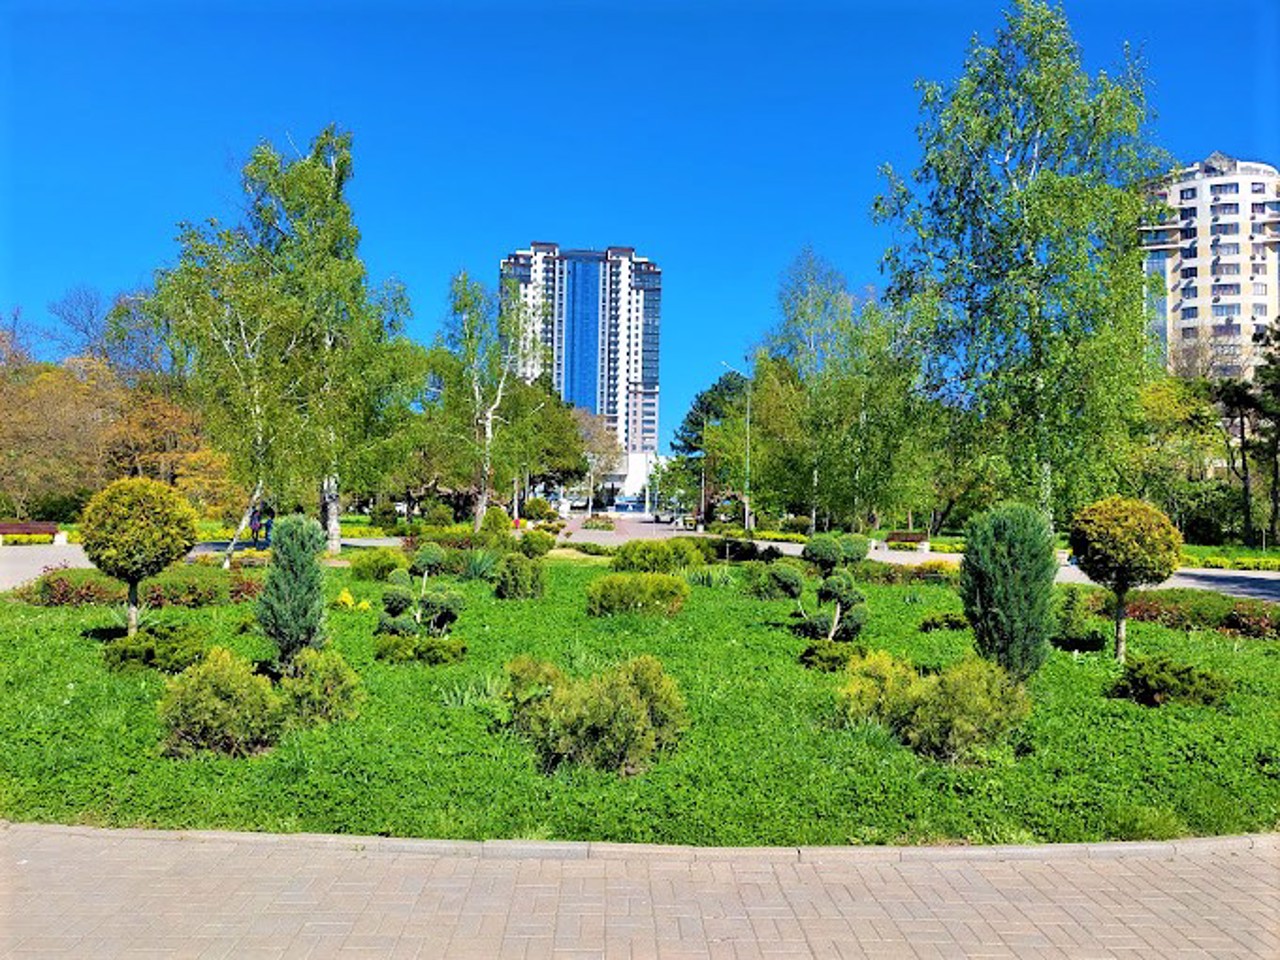 Peremohy Arboretum, Odesa